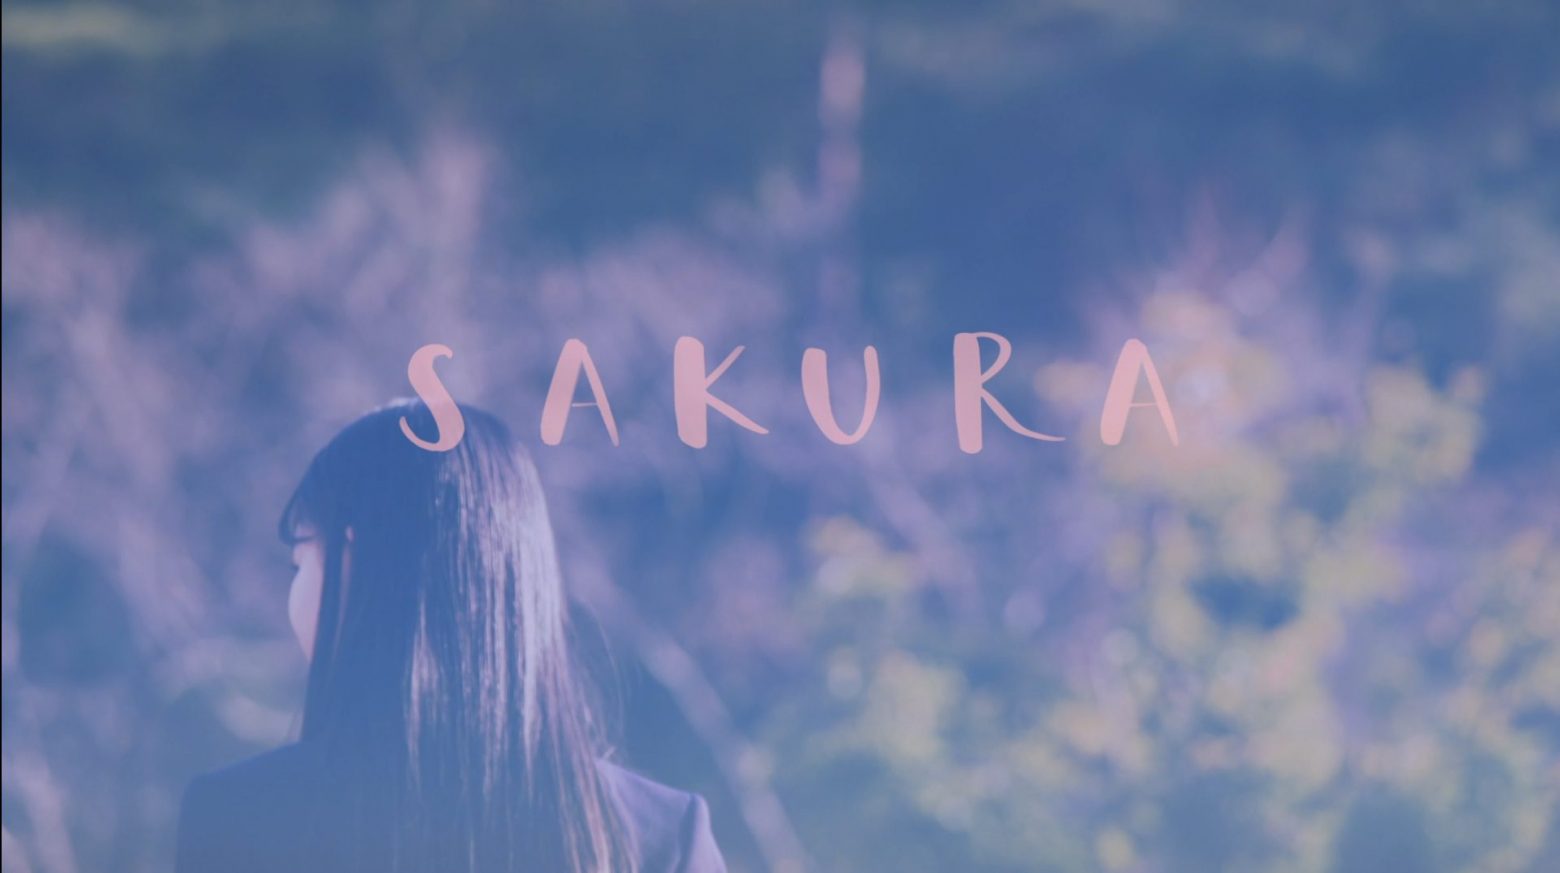 いきものがかり Sakura を題材に全国の中高生でつくる初のmvが完成 水野良樹からのメッセージも Musicman